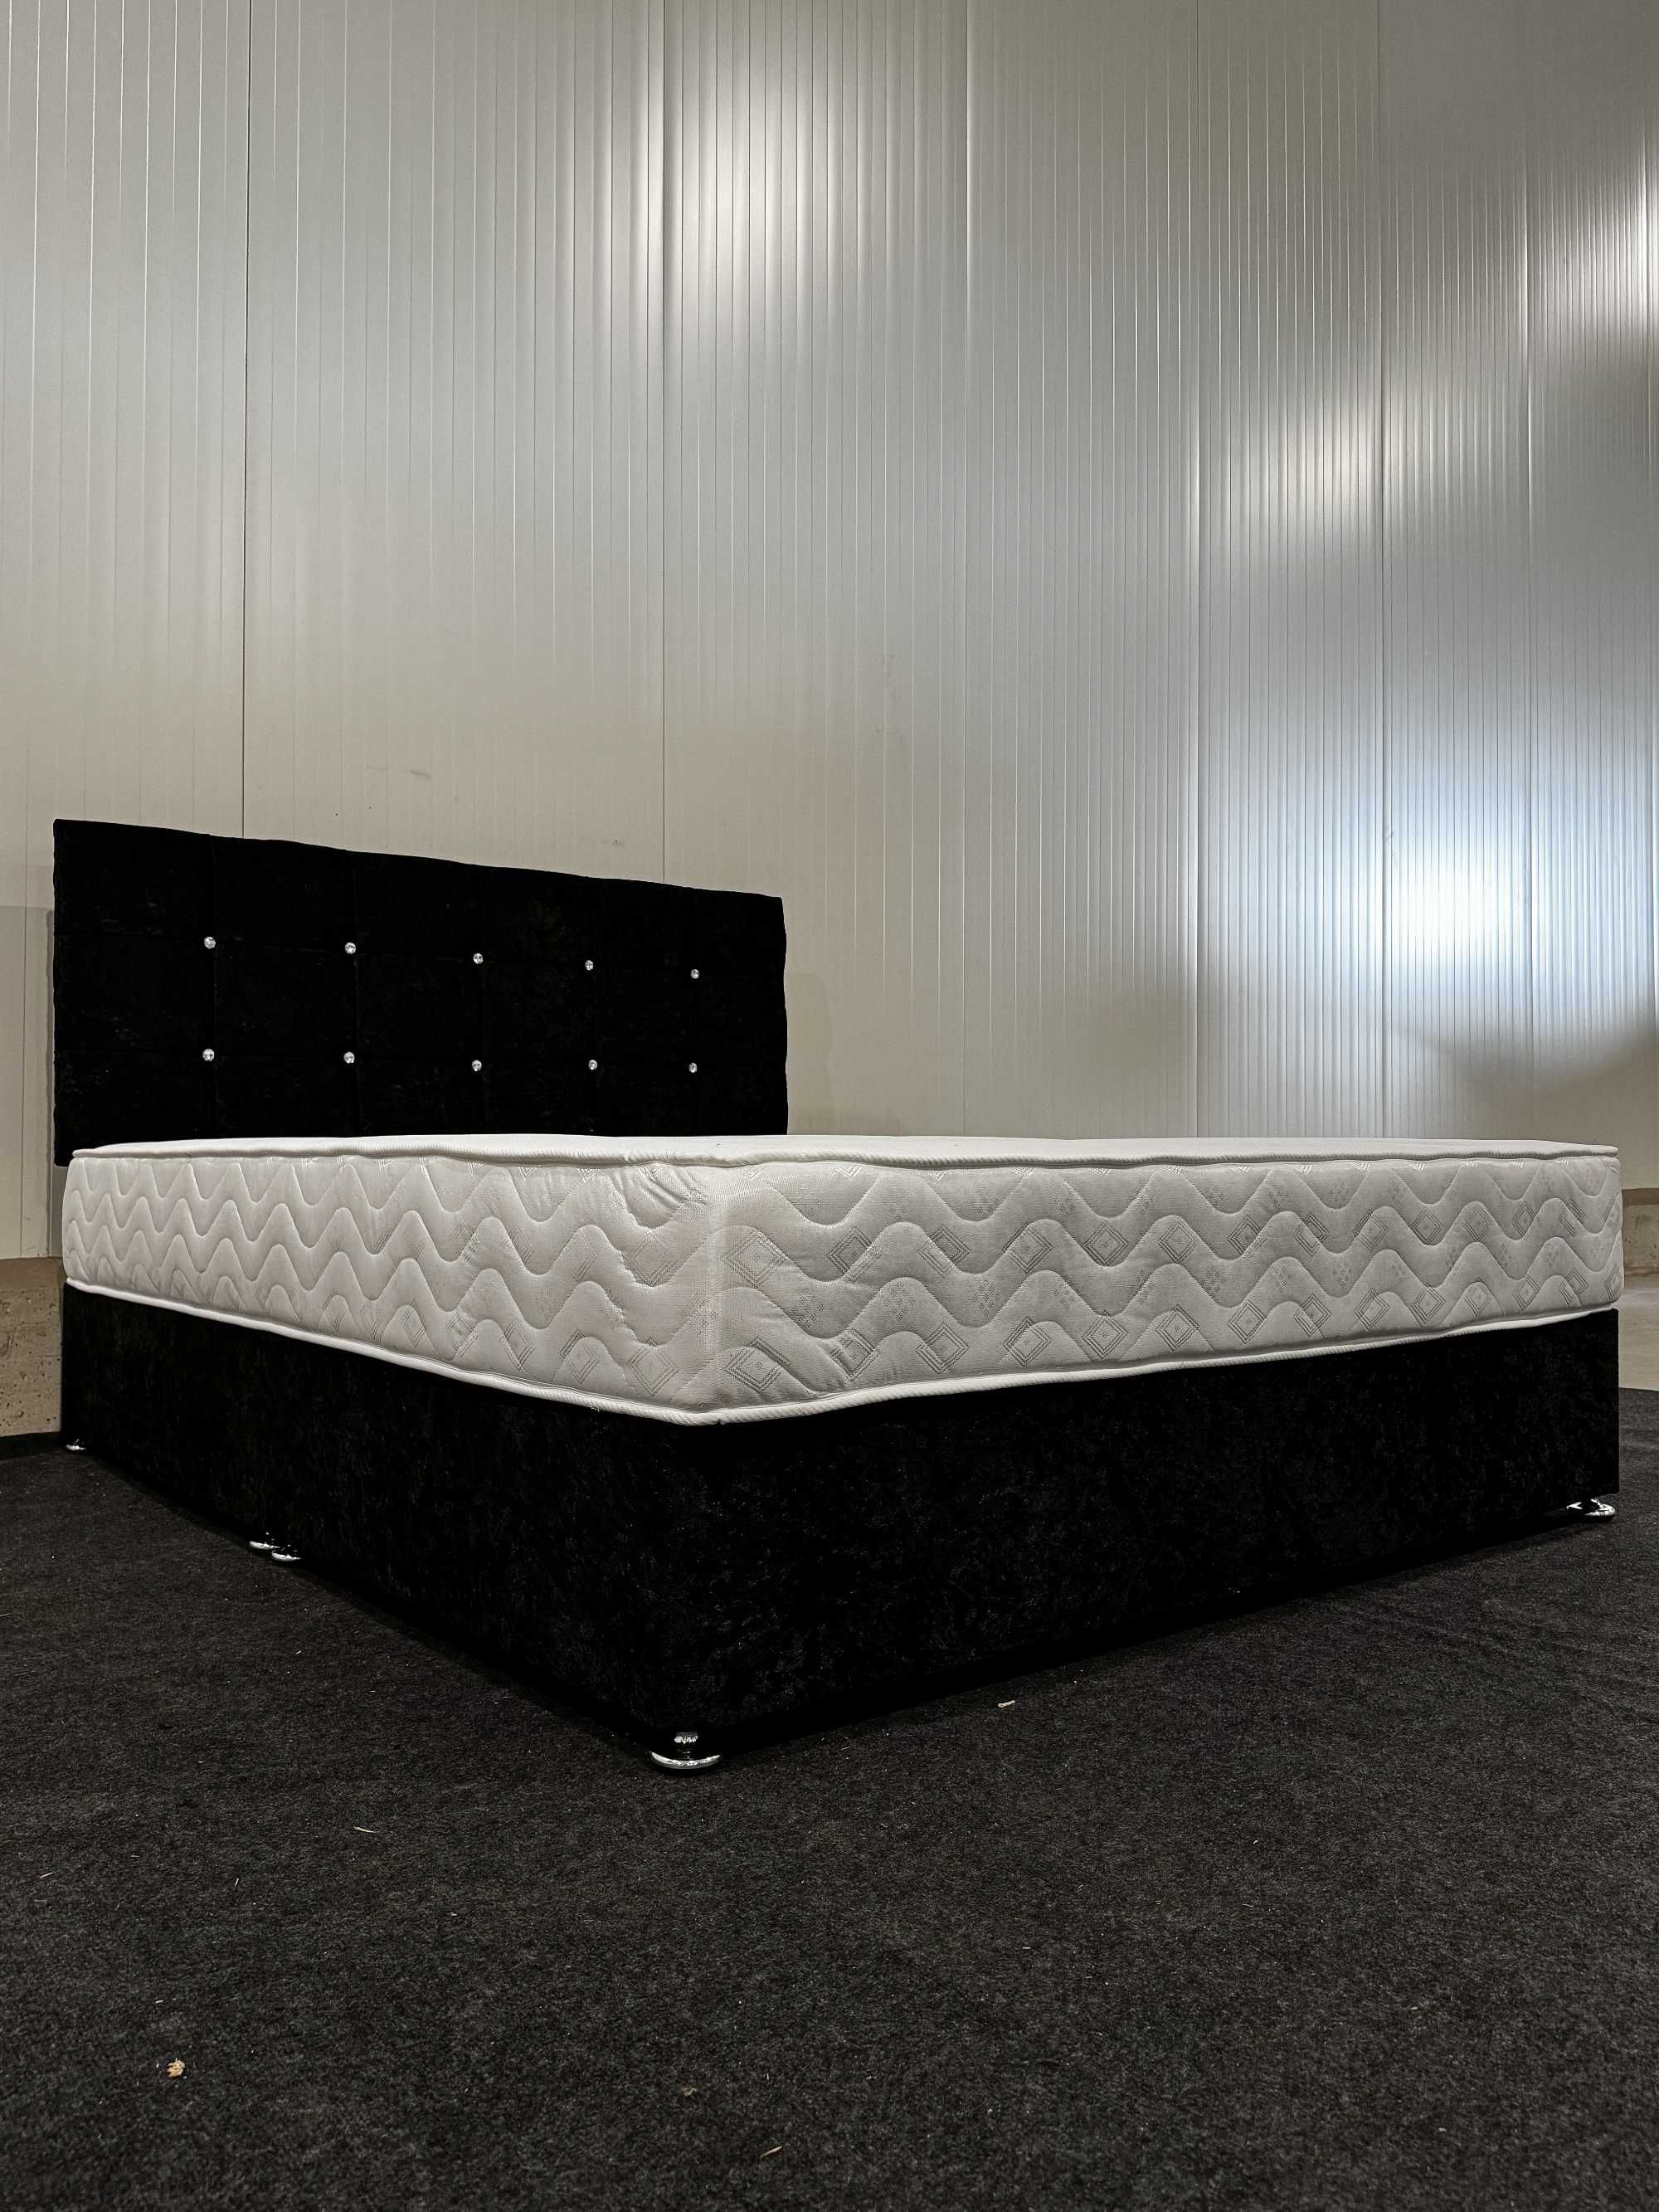 Łóżko w zestawie z materacem. Wymiary 160cmx200cm